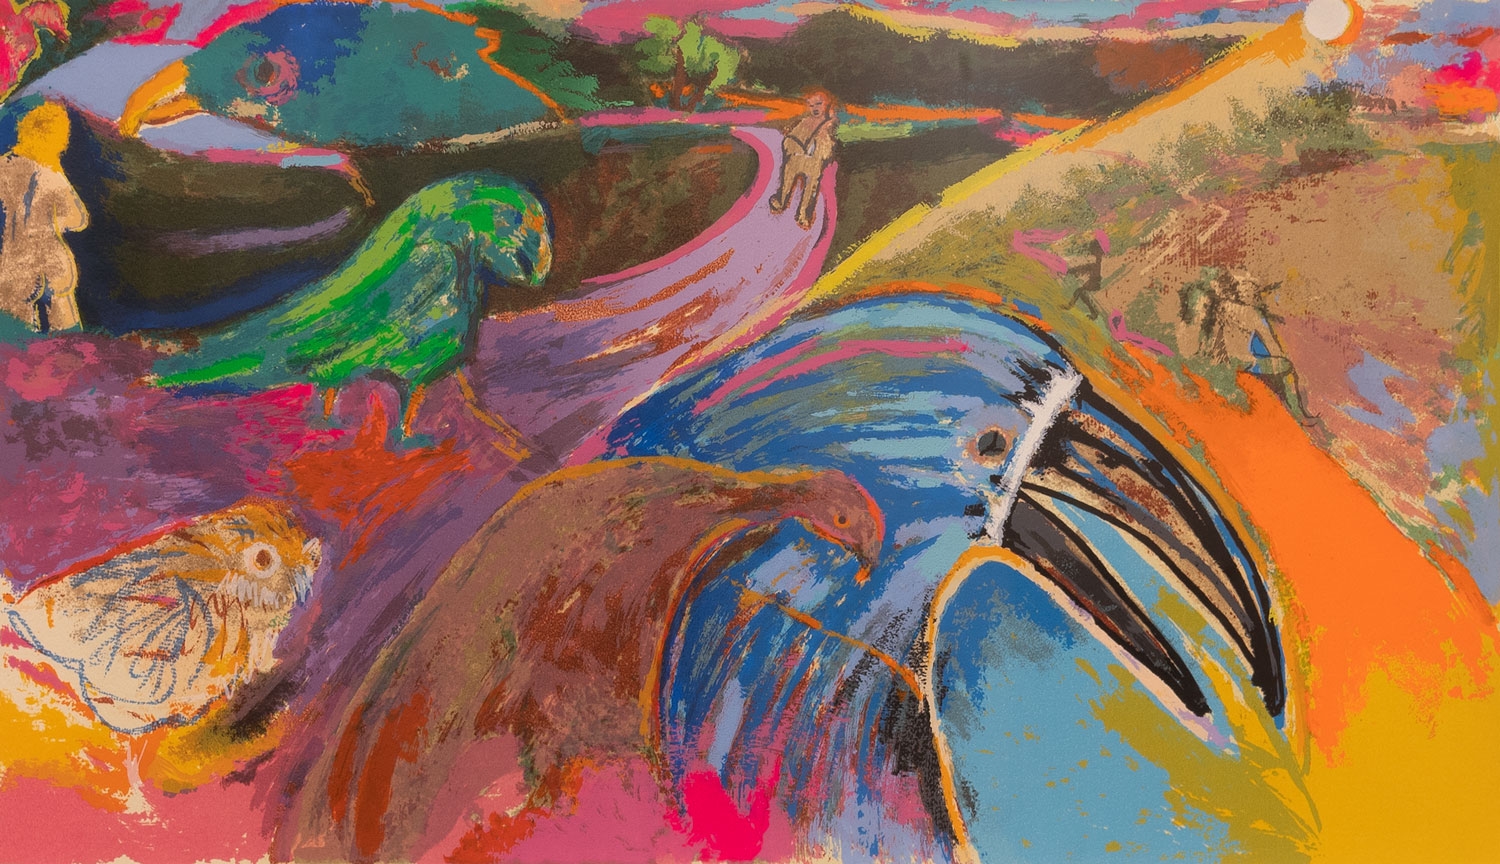 Pájaros ambiguos by Luis Felipe Noé, 1985